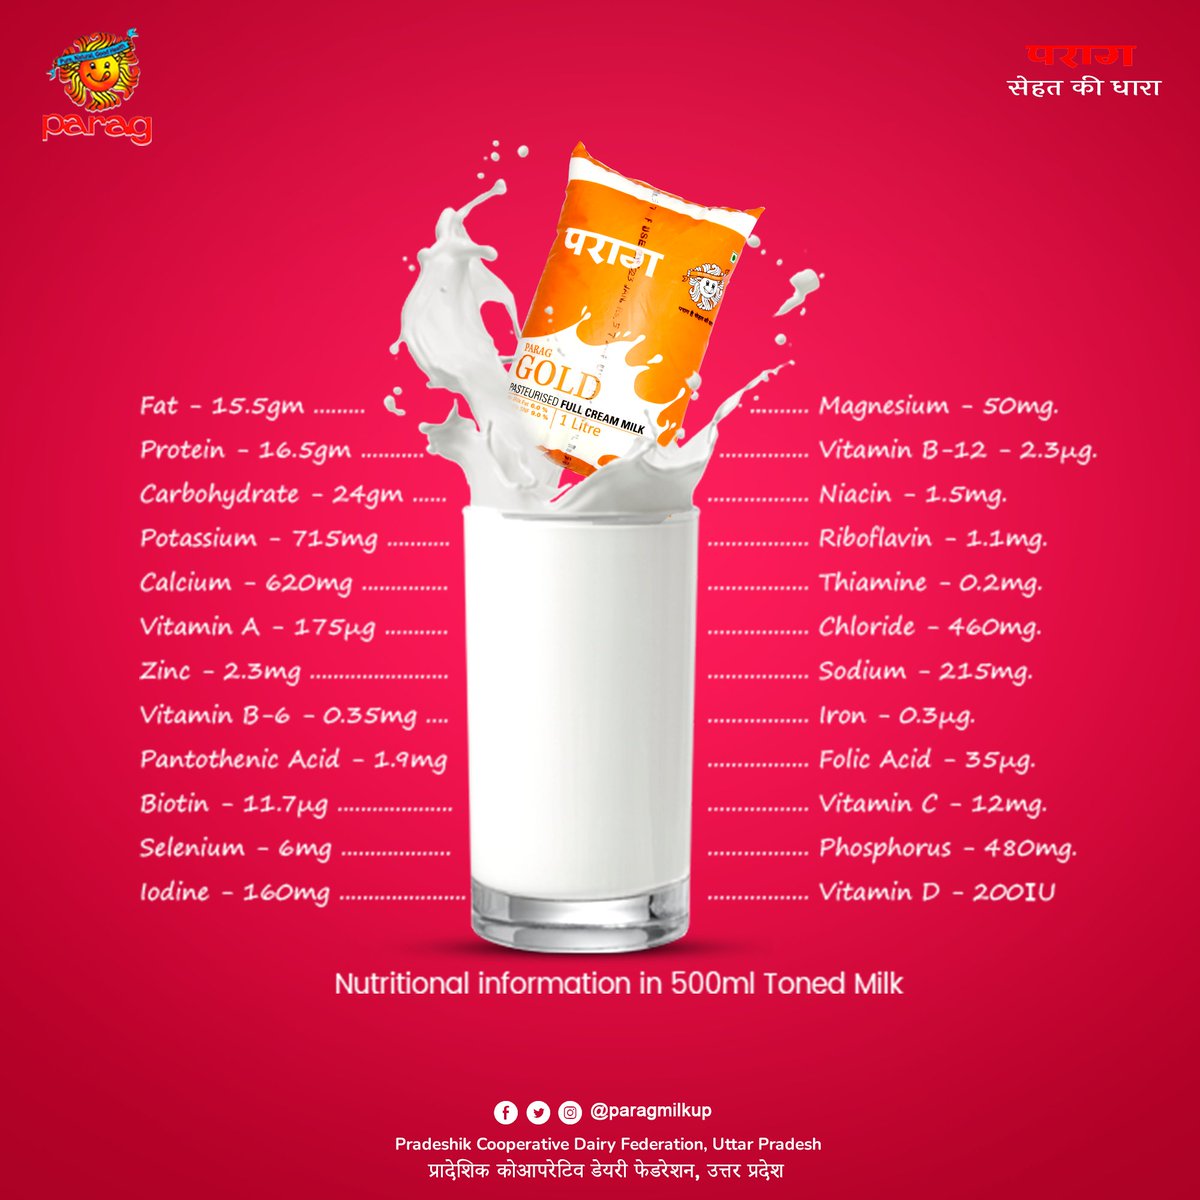 Nutritional information in 500ml toned milk.🥛

#paragmilkup #milkyway #milk #milkcake #healthy #healthyfood #healthydrink #paragmilk #milkbooster #milkglass #milkandhoney #milktea #teatime #boost #energy #power